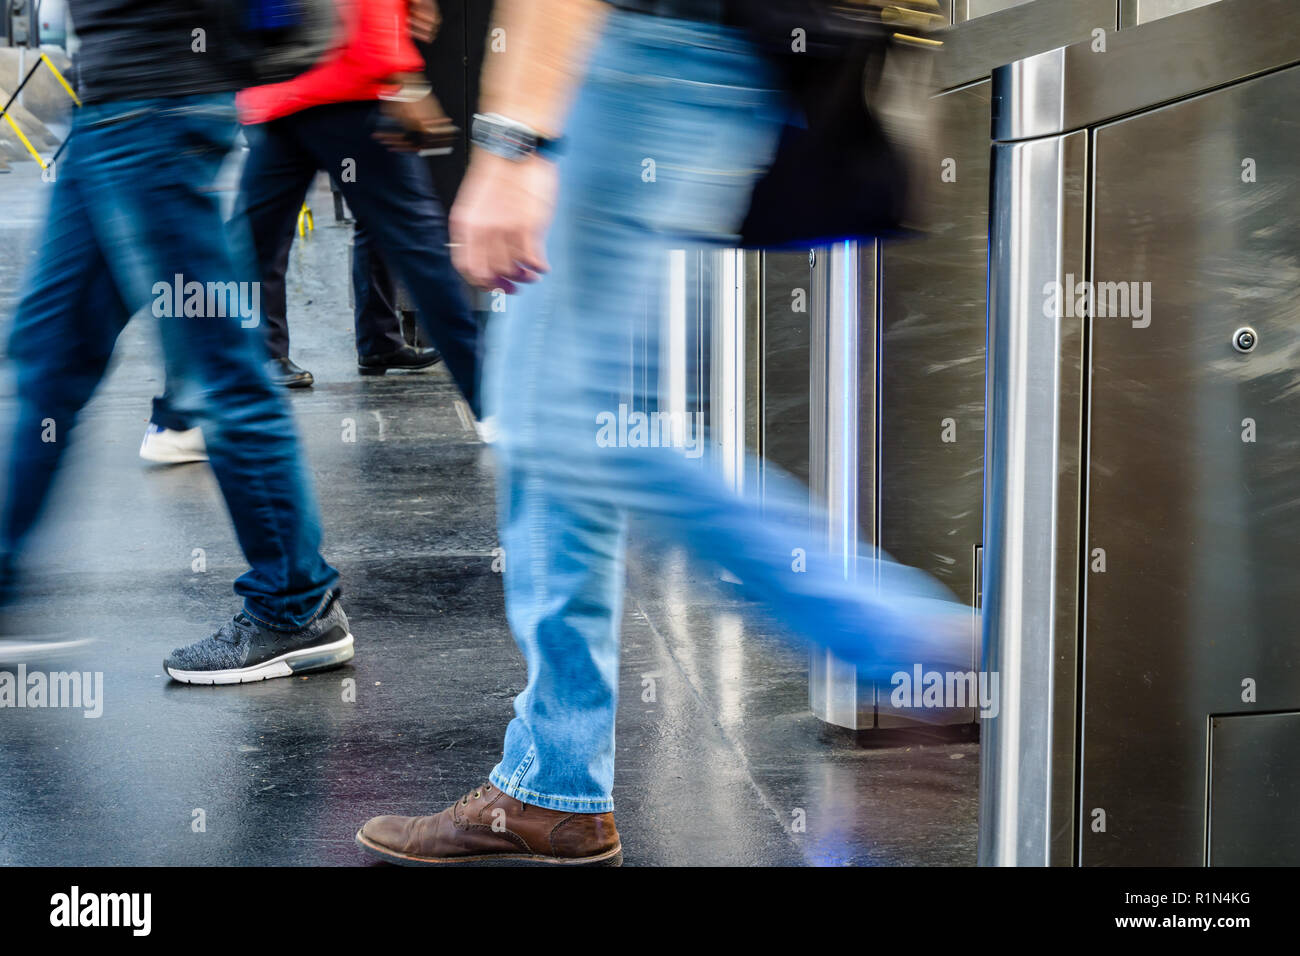 Vue latérale d'hommes en passant par des portes en acier inoxydable d'un ticket de transport public gare à Paris, France, avec le flou. Banque D'Images